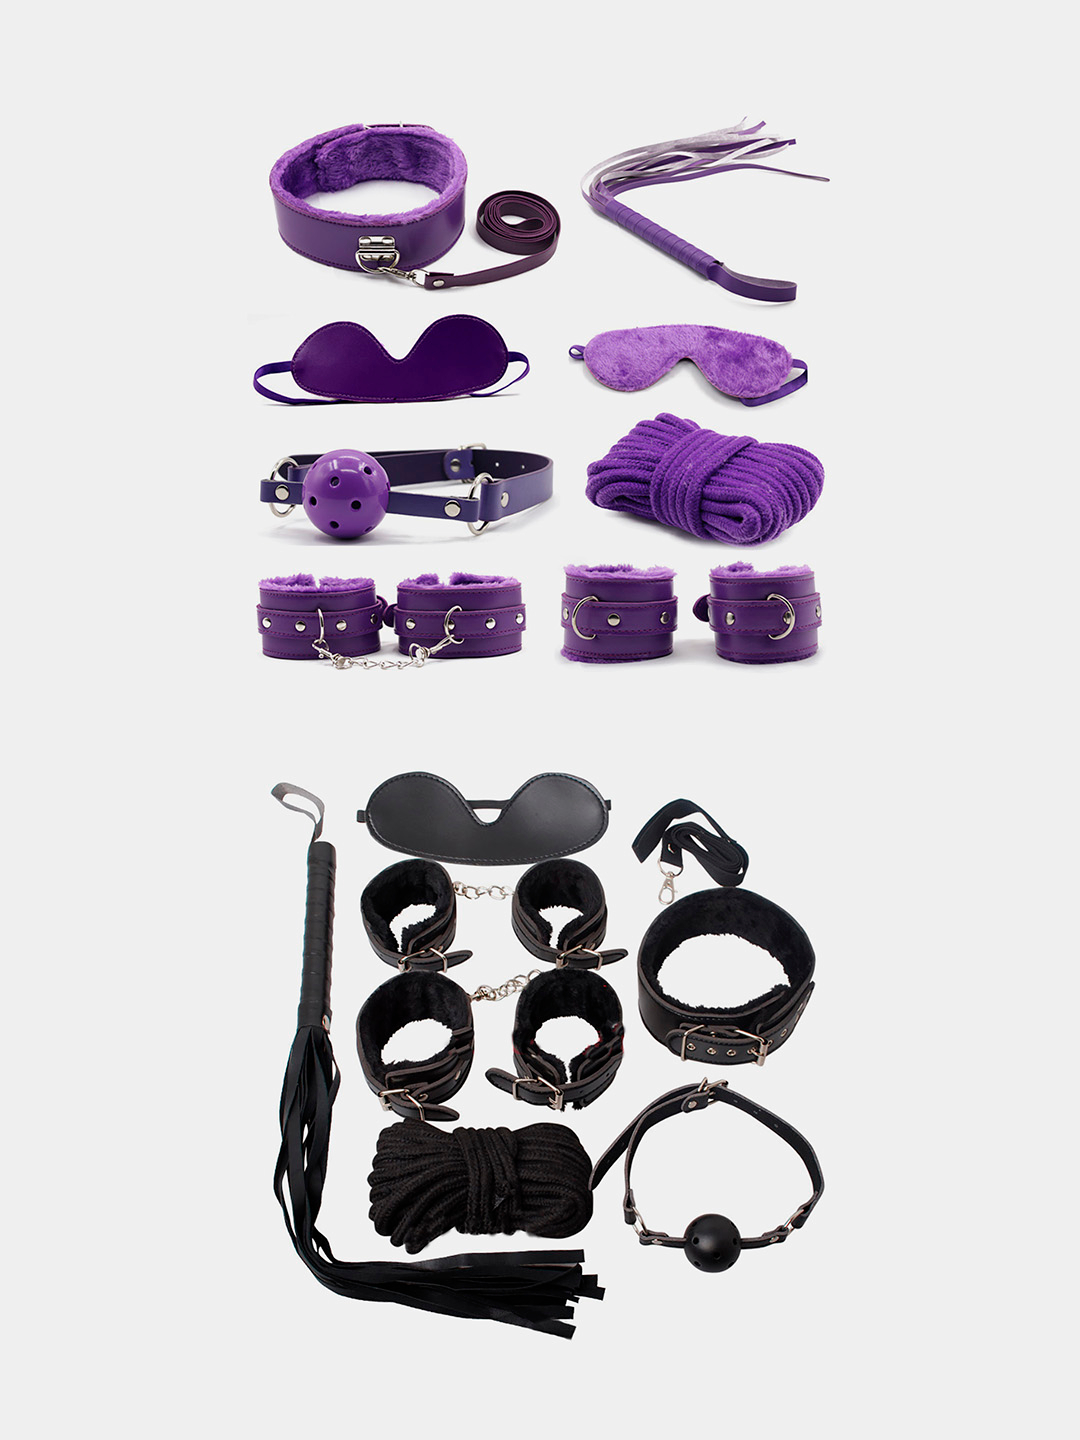 БДСМ Арсенал набор БДСМ аксессуаров из натуральной кожи: ошейник, наручники, поножи (коричневый)